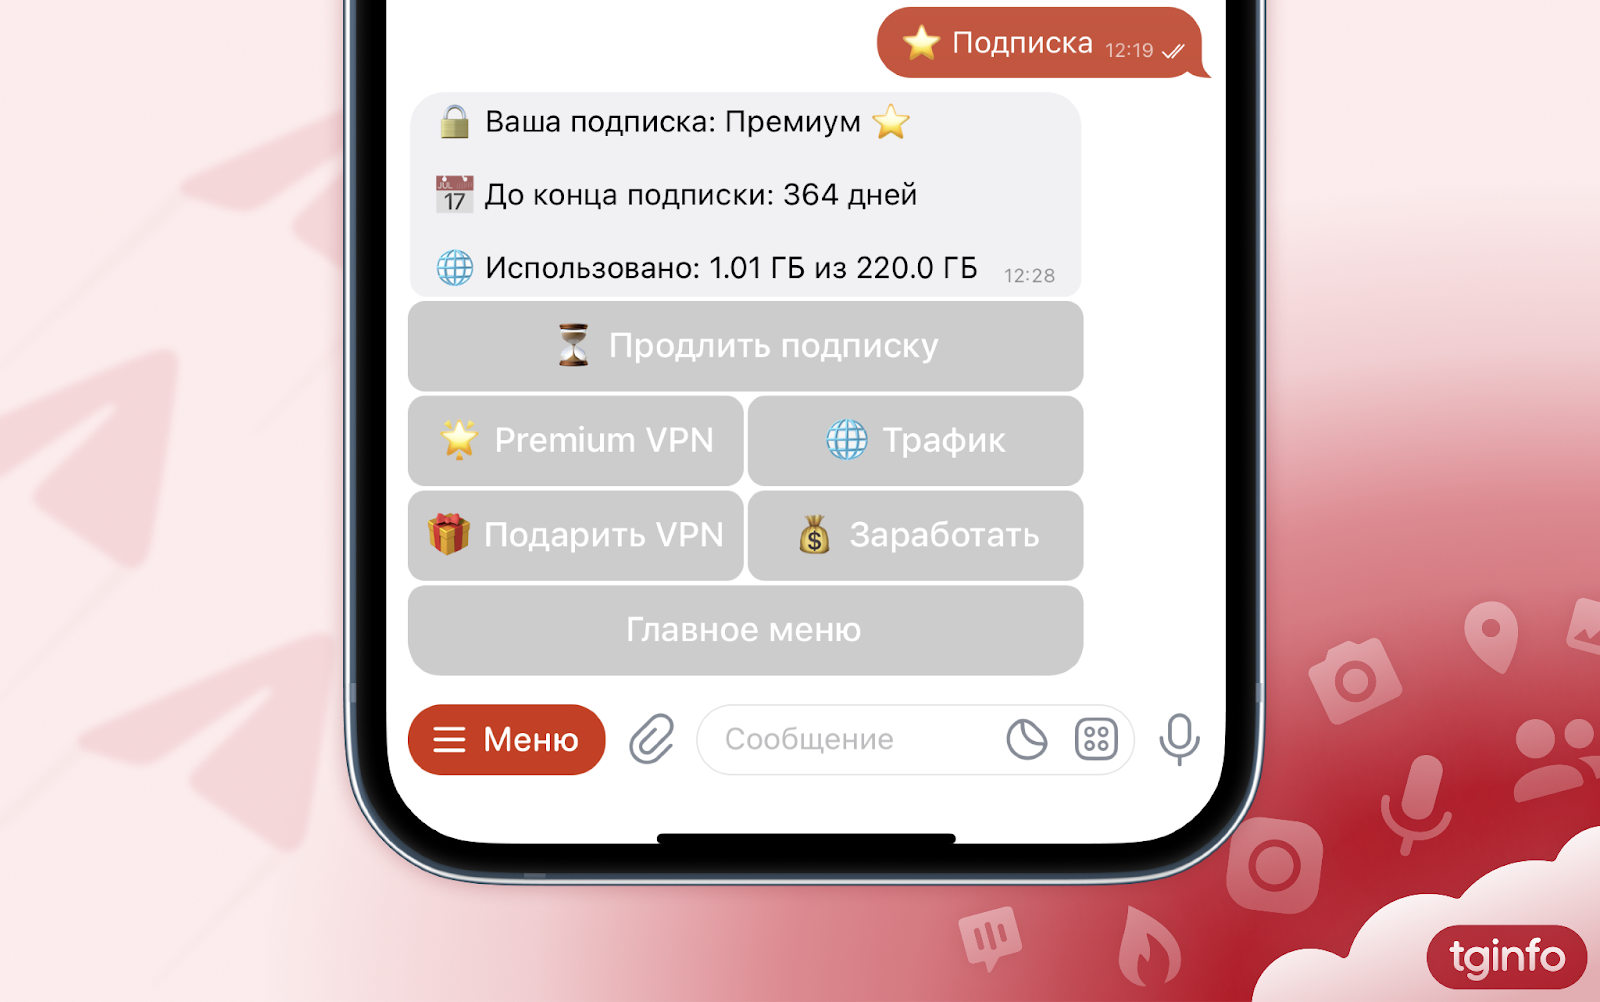 Телеграмм обновить на андроид до последней версии бесплатно русском языке как фото 41